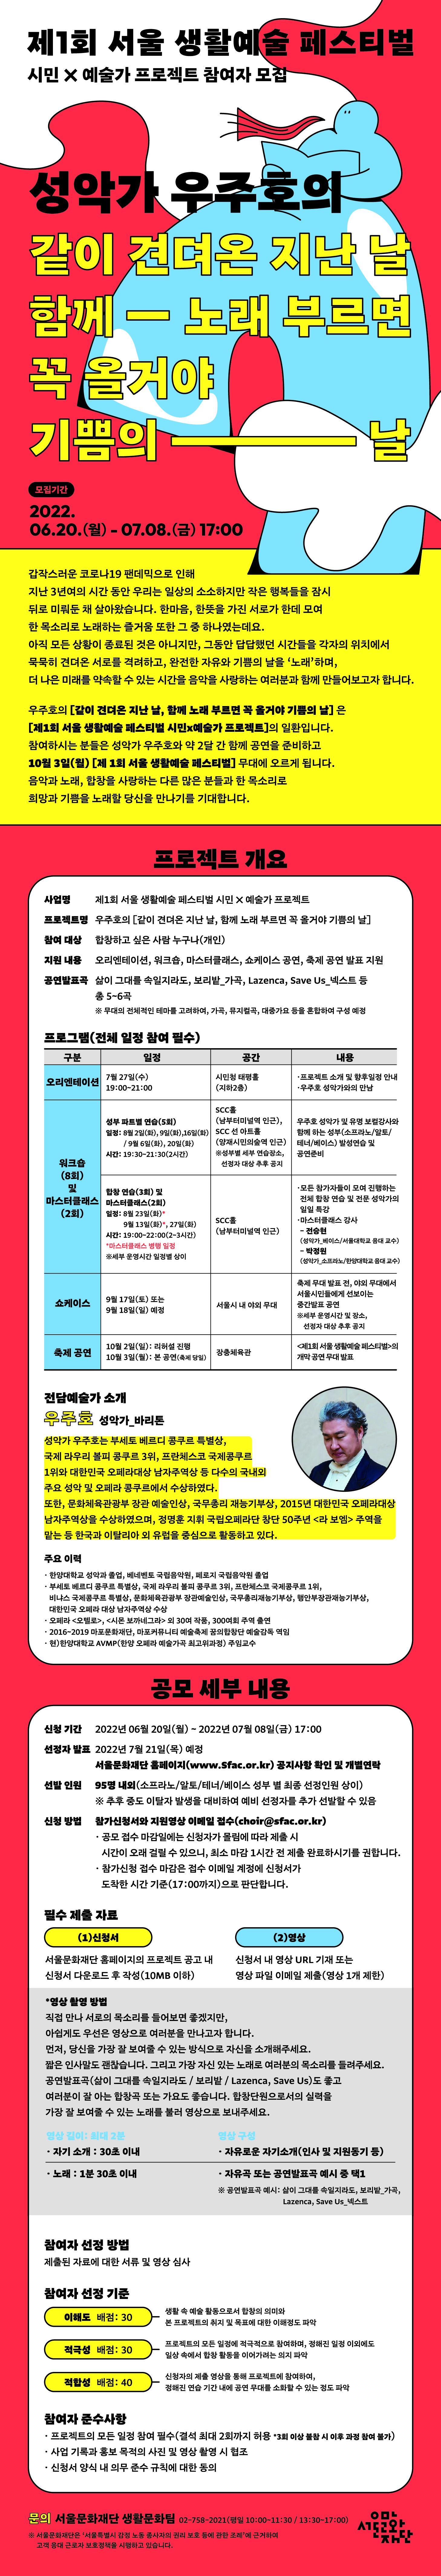 제1회 서울 생활예술 페스티벌 시민X예술가 프로젝트(합창) 참여자 모집